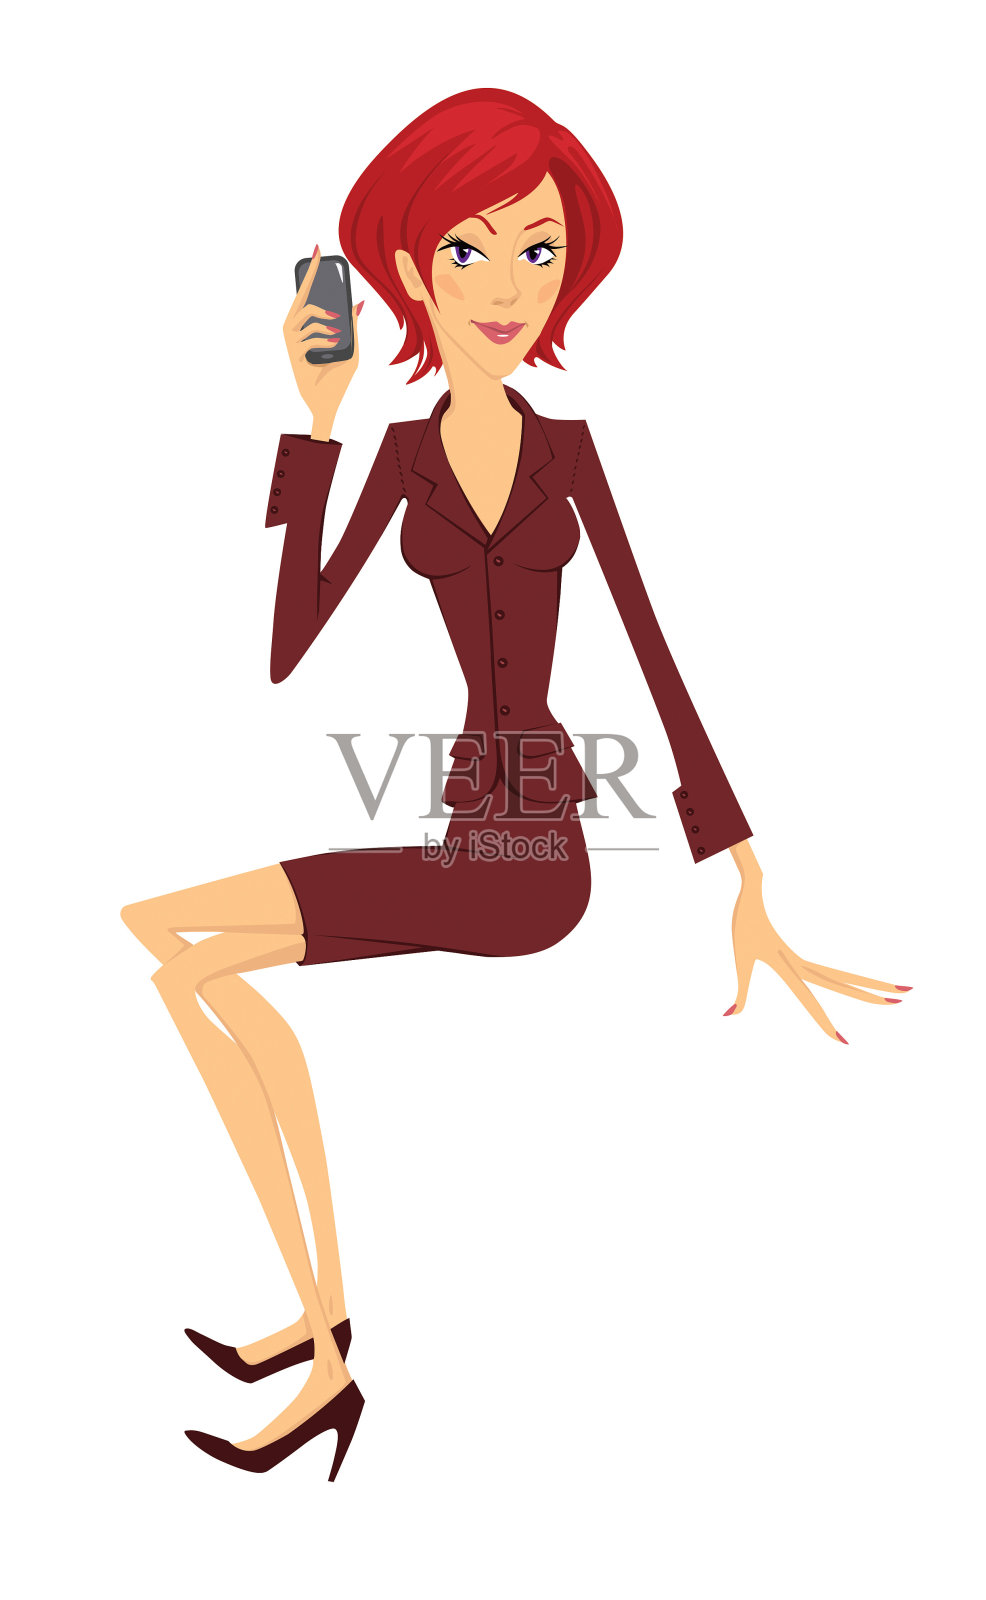 穿着西装的红头发坐着的女人。拿着手机的商务女性插画图片素材